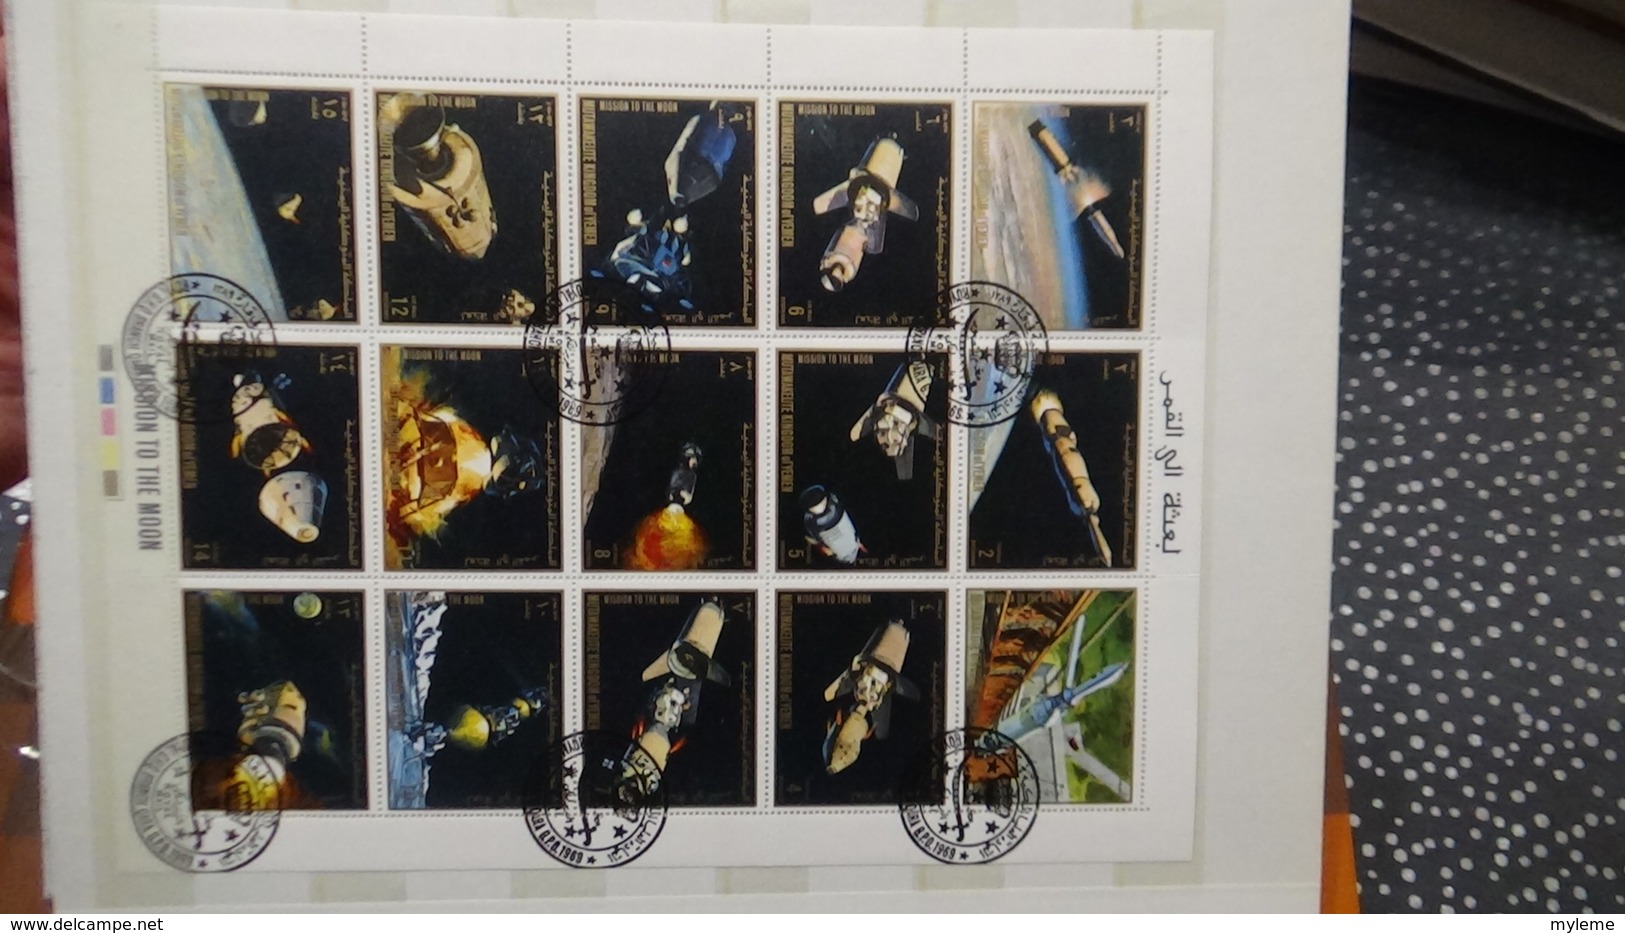 B378 Collection timbres et blocs oblitérés. Thématique l'espace. A saisir !!!